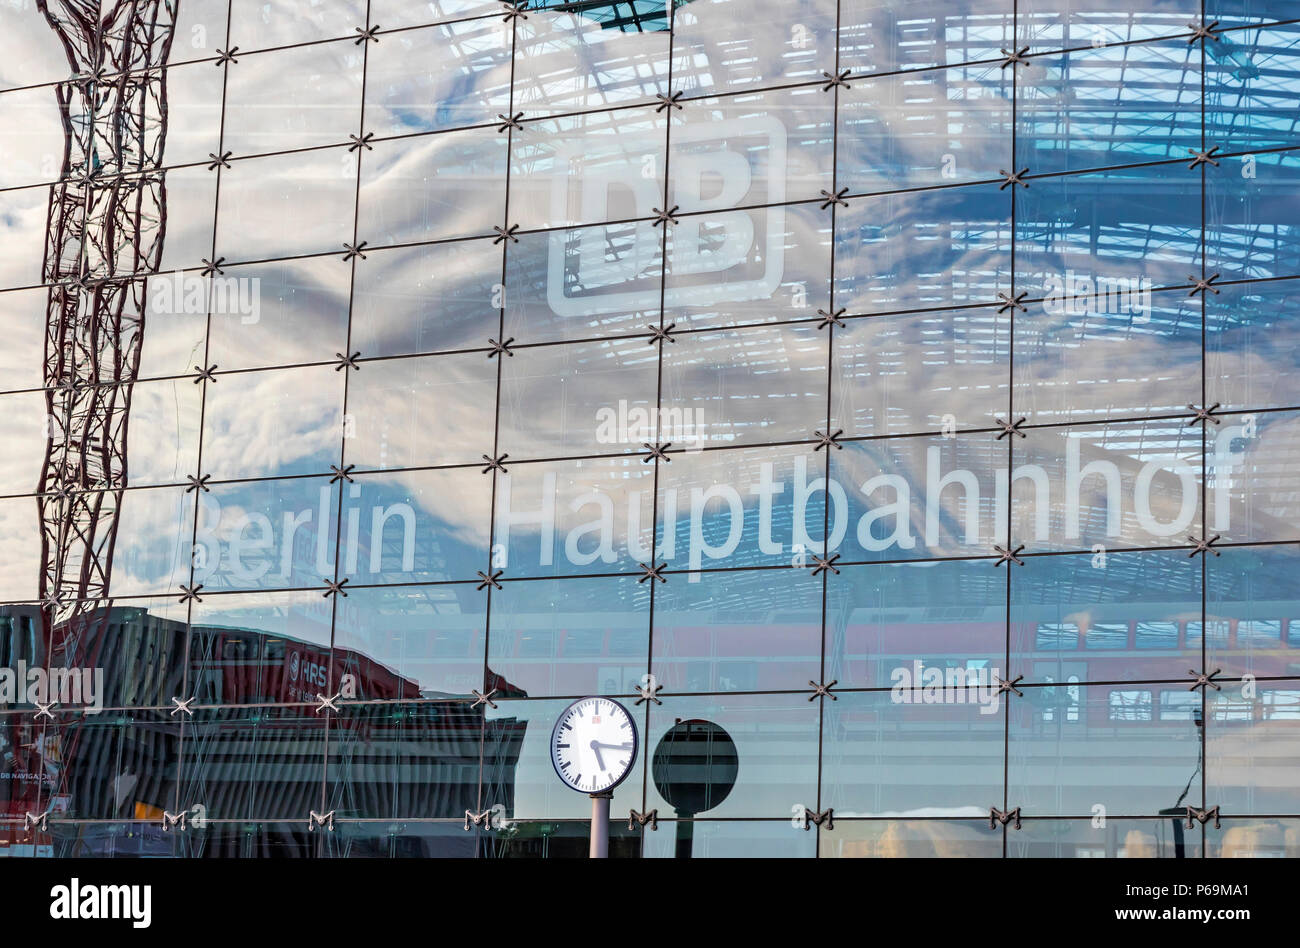 BERLIN, ALEMANIA - 20 de septiembre de 2017: Cierre de la vista de la fachada de la Estación Central de Berlín (Berlin Hauptbahnhof, Berlín Hbf), Alemania. Estación opene Foto de stock